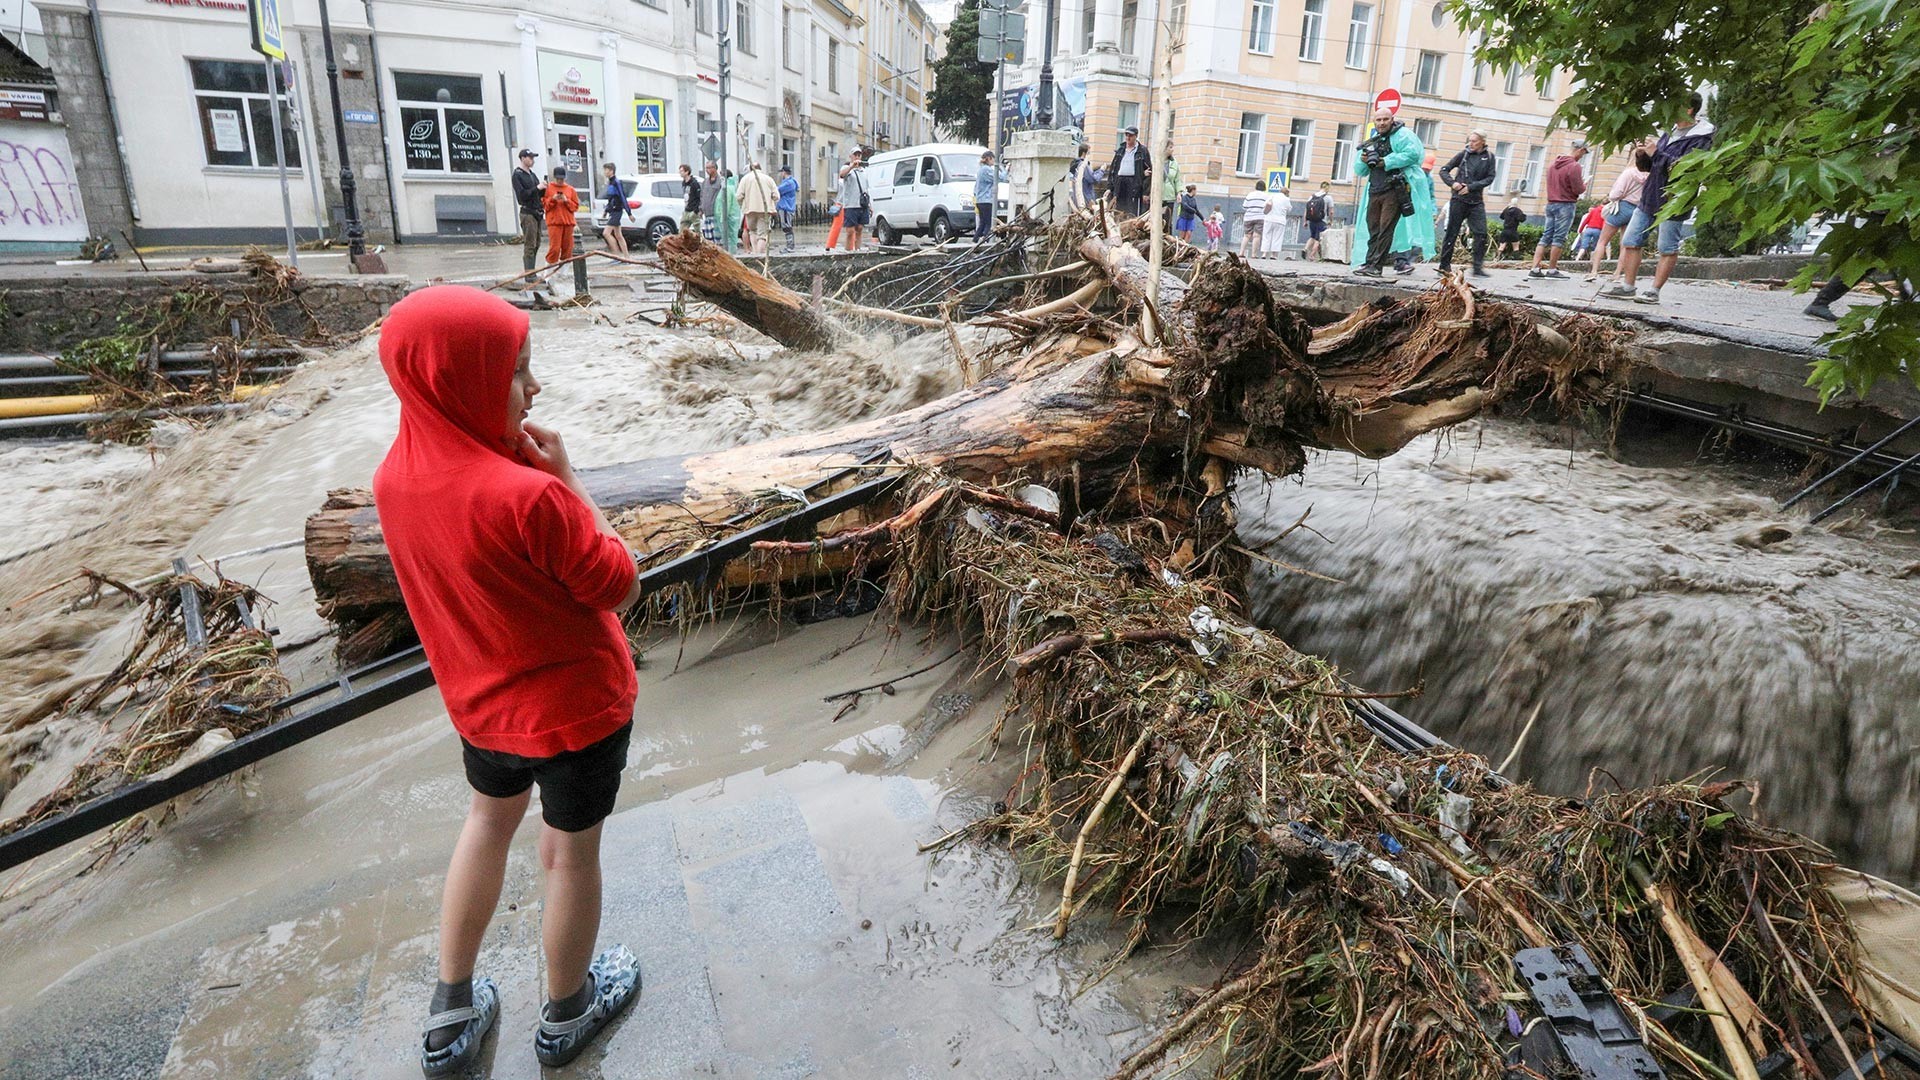 Луѓе на улица после поплавата по обилните врнежи во Јалта.

